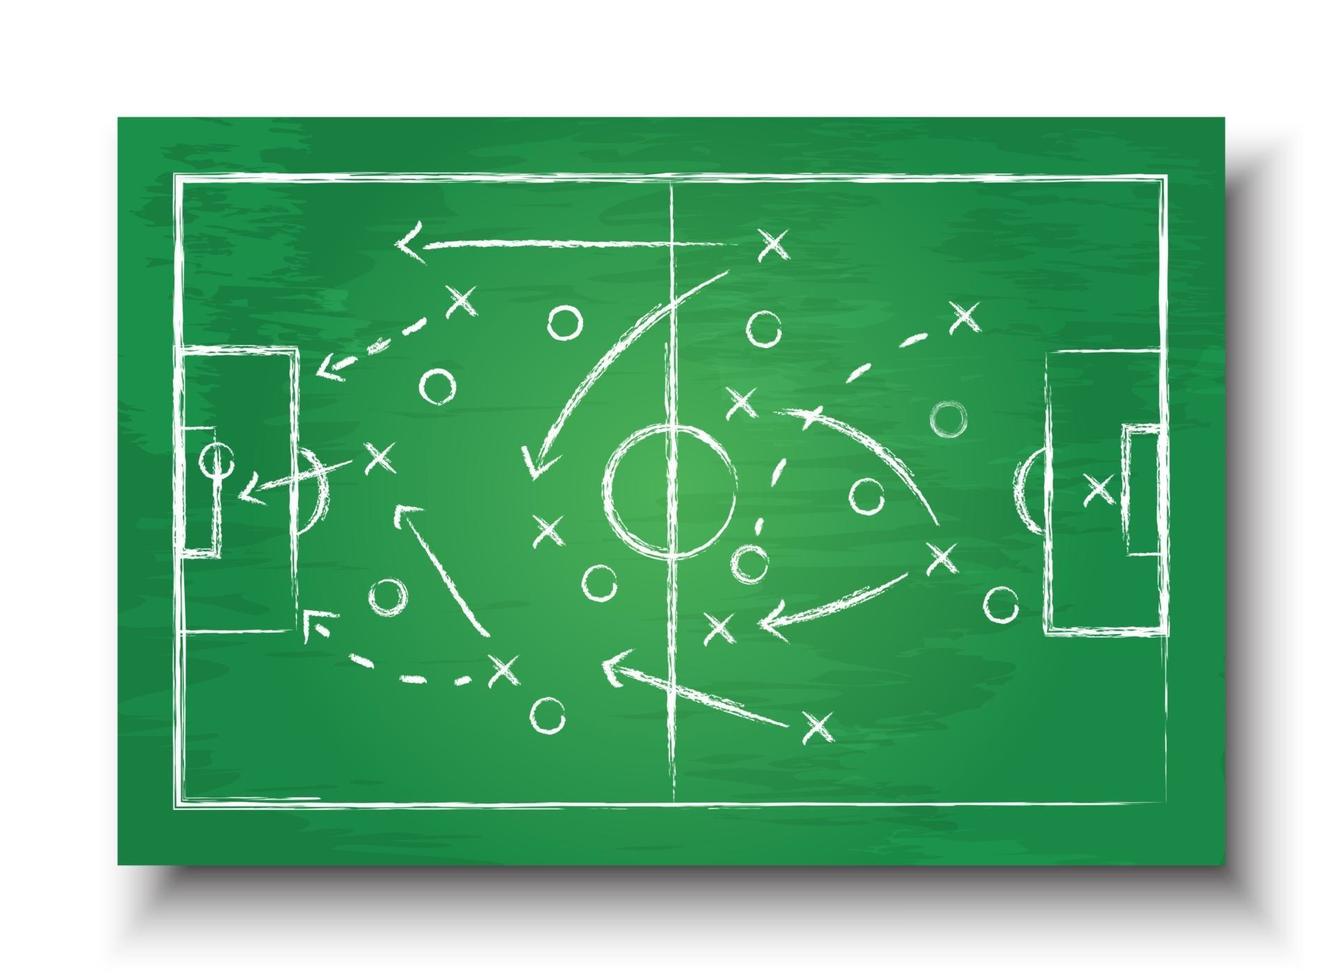 https://static.vecteezy.com/ti/vecteur-libre/p1/2524690-football-cup-formation-et-tactique-tableau-noir-avec-football-game-strategy-vector-for-international-world-championship-tournament-2018-concept-vectoriel.jpg